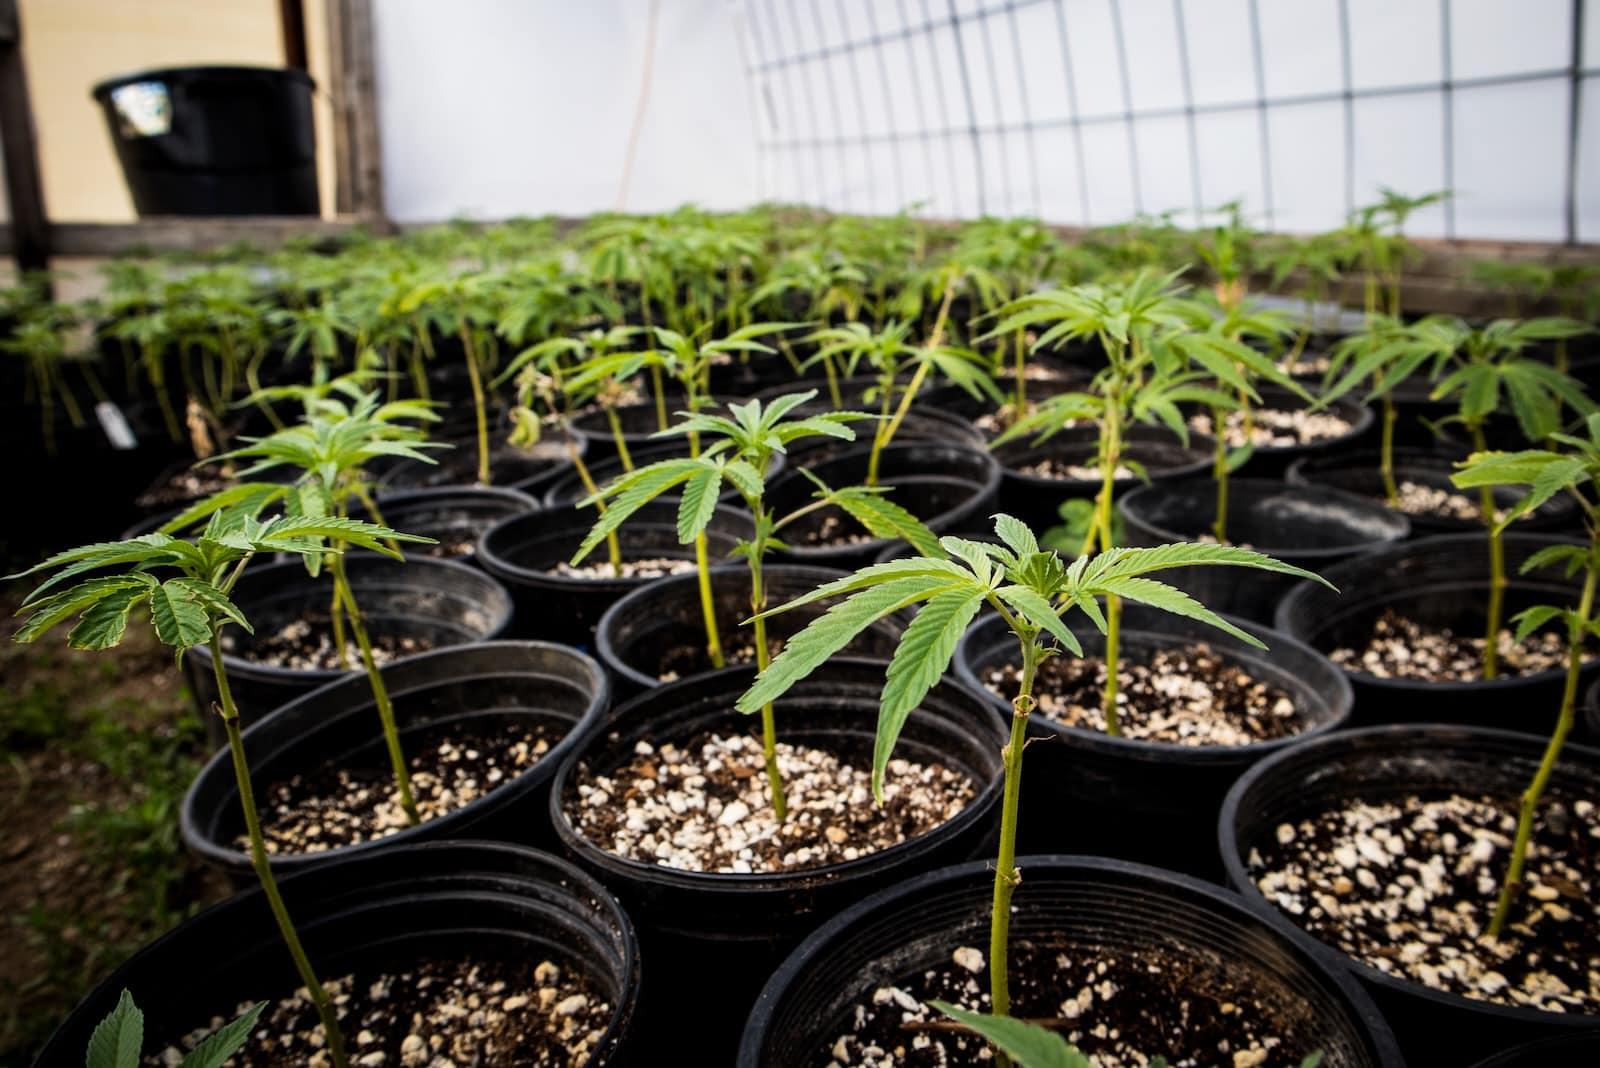 Nederland stelt de start van een proefproject voor cannabis – The Economics of Cannabis – uit